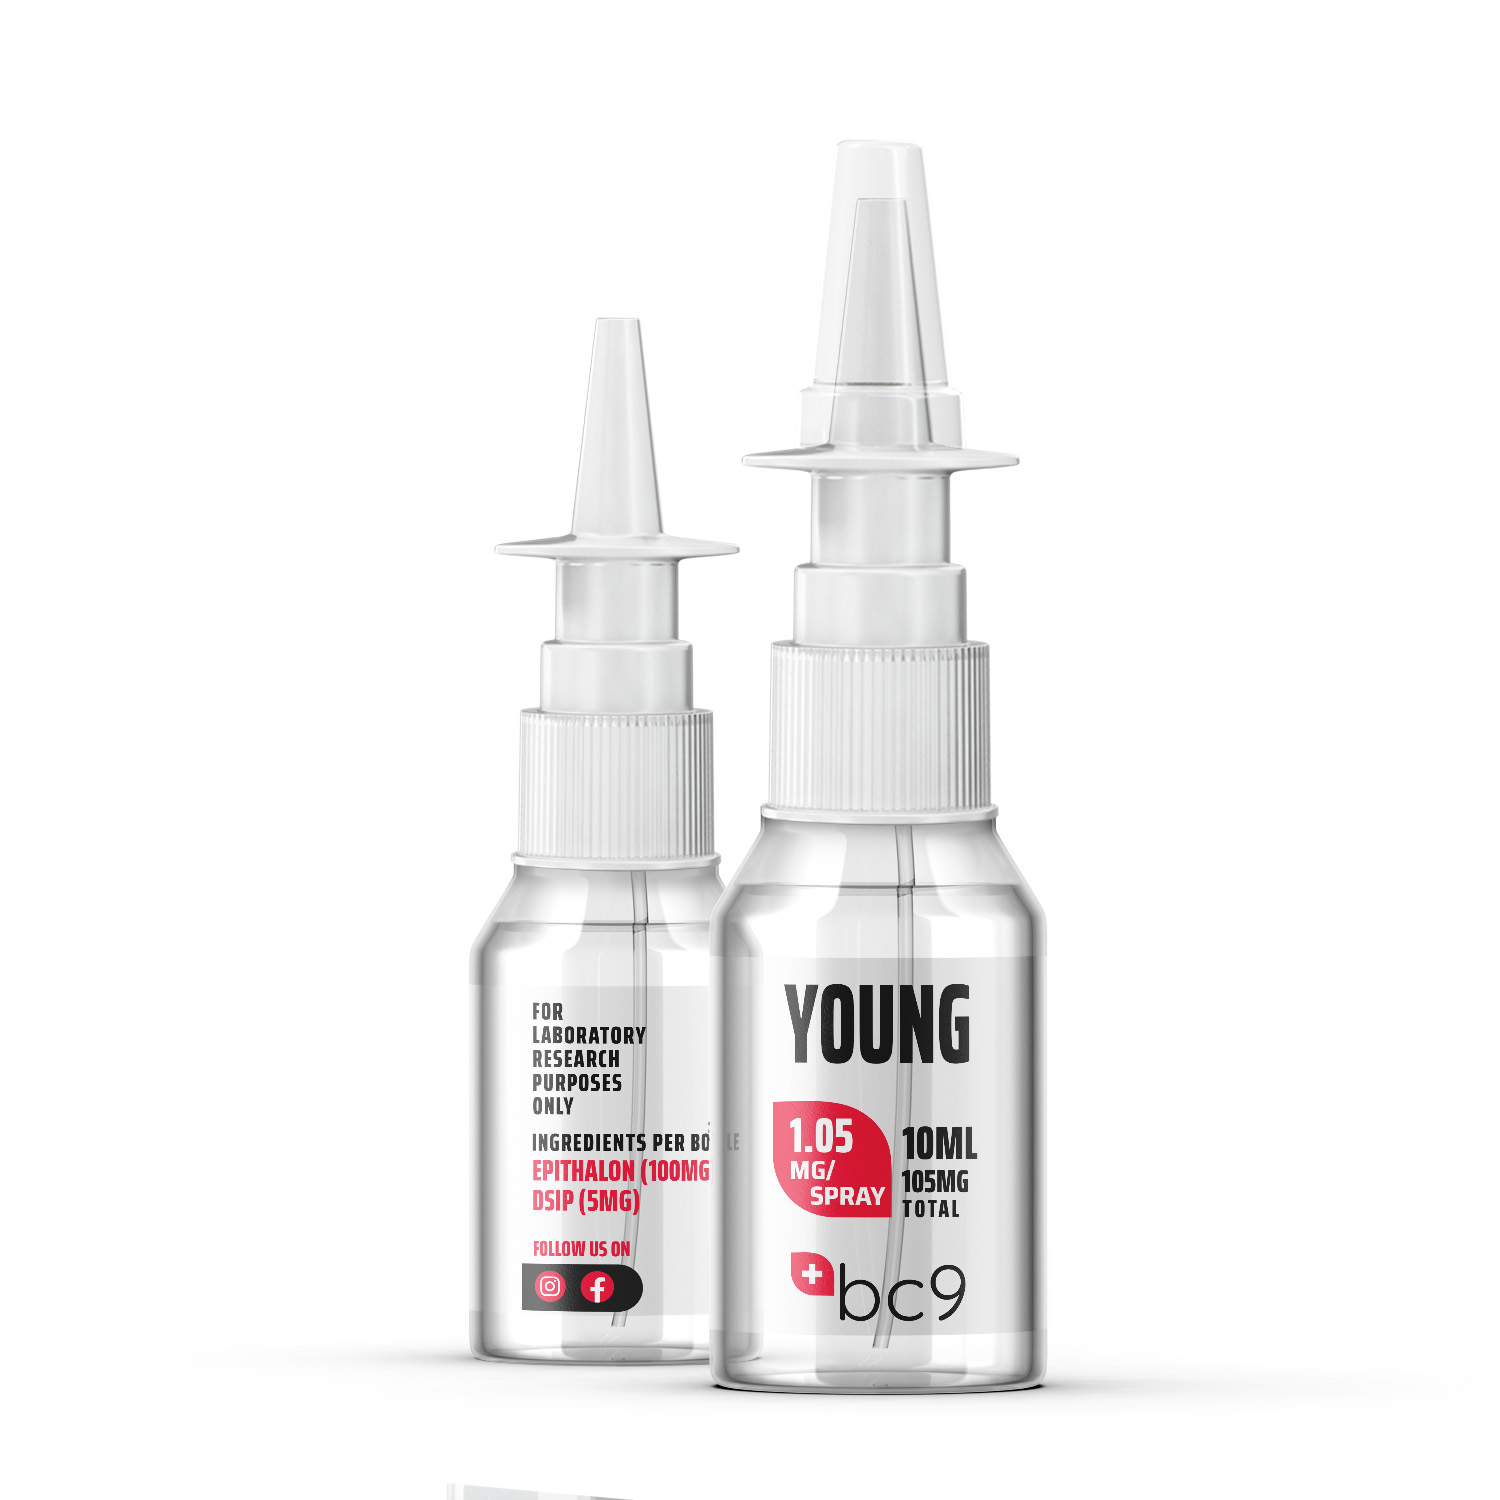 Young Spray (Epithalon + DSIP) Sprays